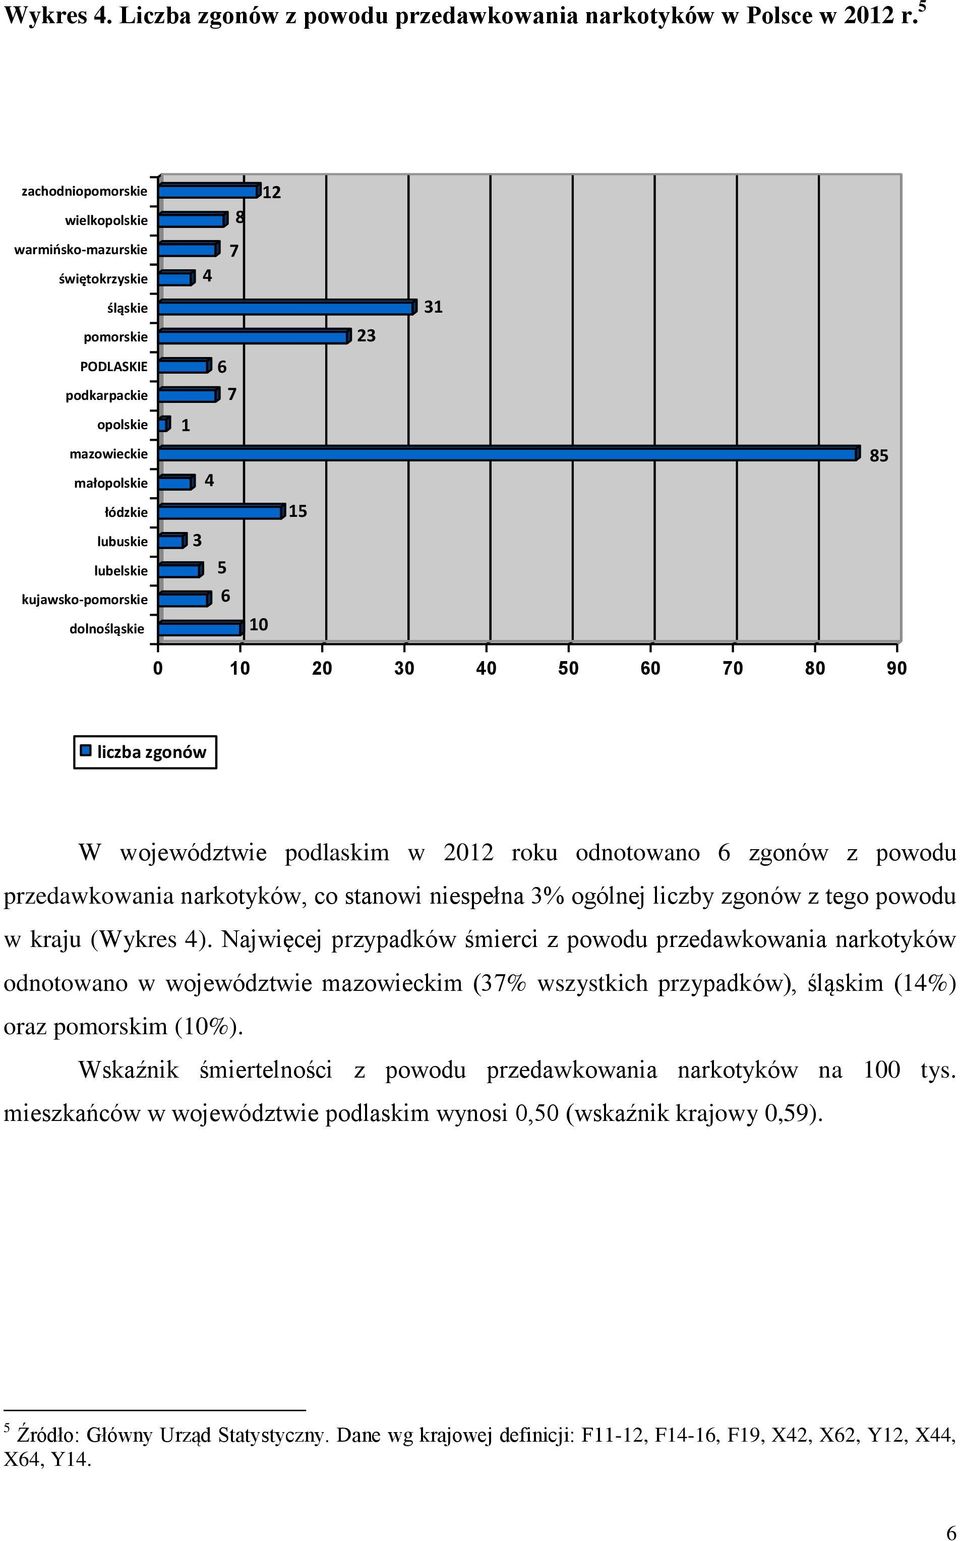 kujawsko-pomorskie dolnośląskie 1 4 3 5 6 10 15 85 0 10 20 30 40 50 60 70 80 90 liczba zgonów W województwie podlaskim w 2012 roku odnotowano 6 zgonów z powodu przedawkowania narkotyków, co stanowi